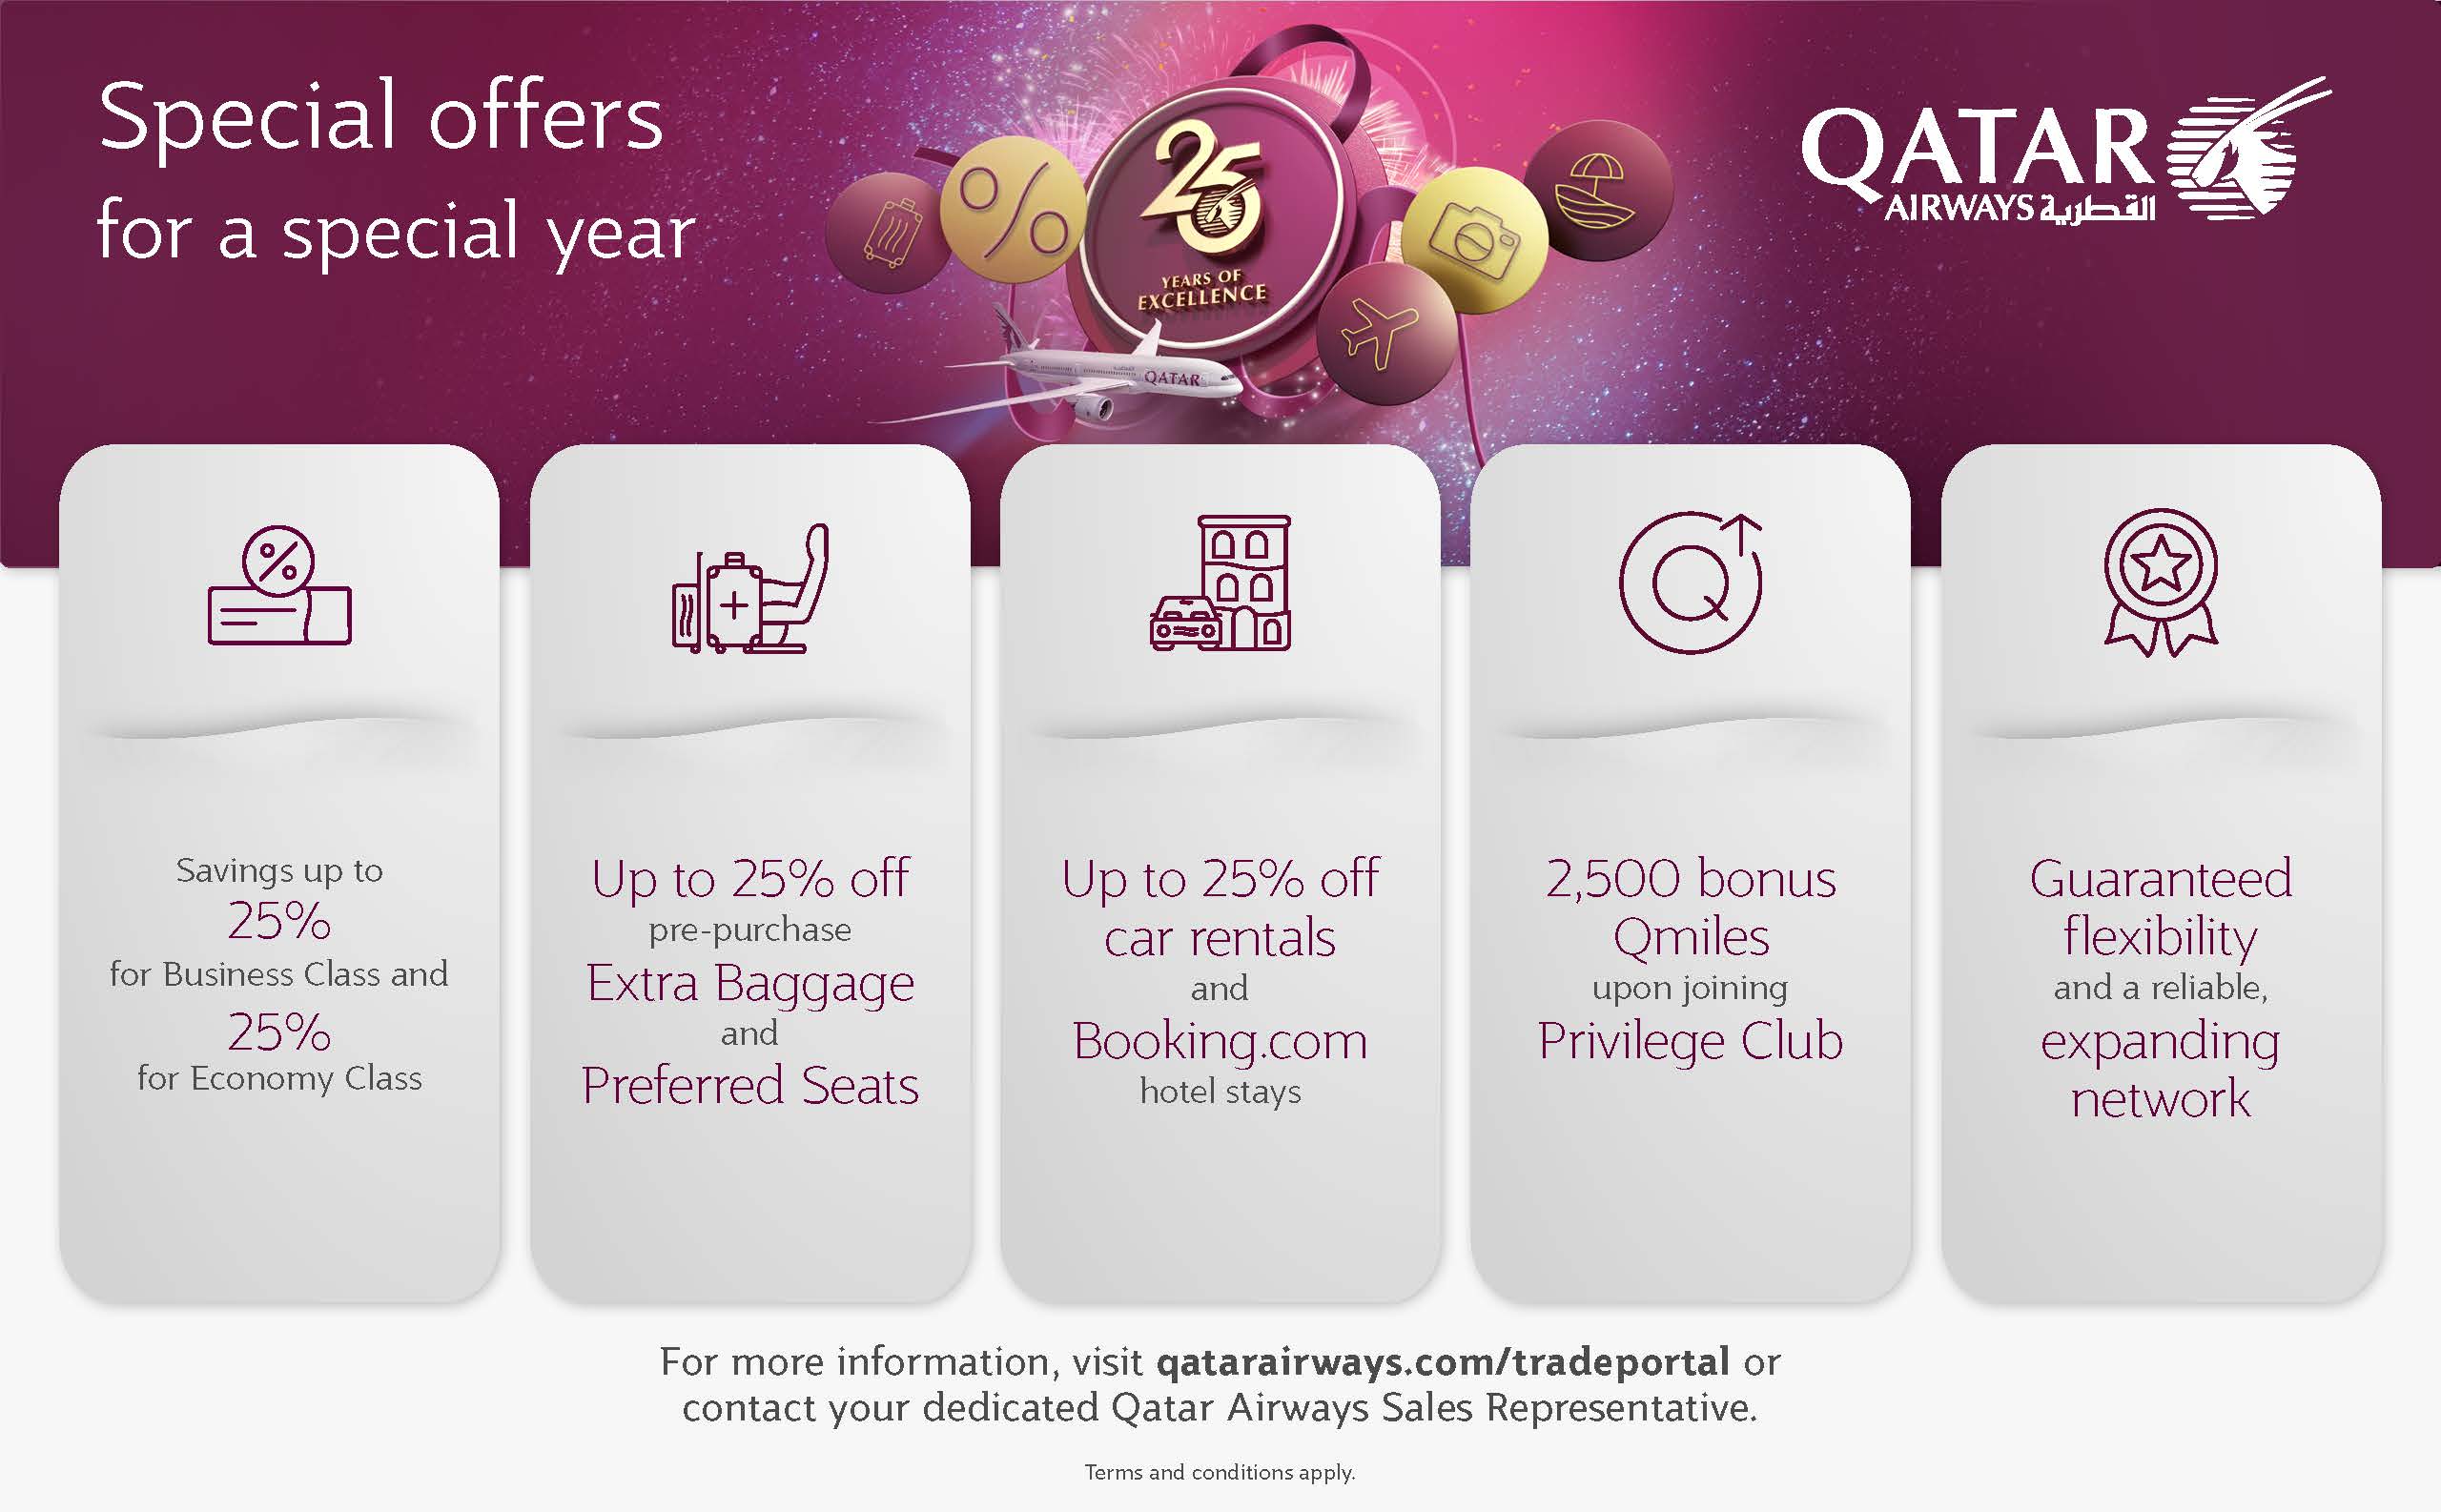 بخشنامه و اطلاعیه   هواپیمایی قطر درباره Special offers for a special year 